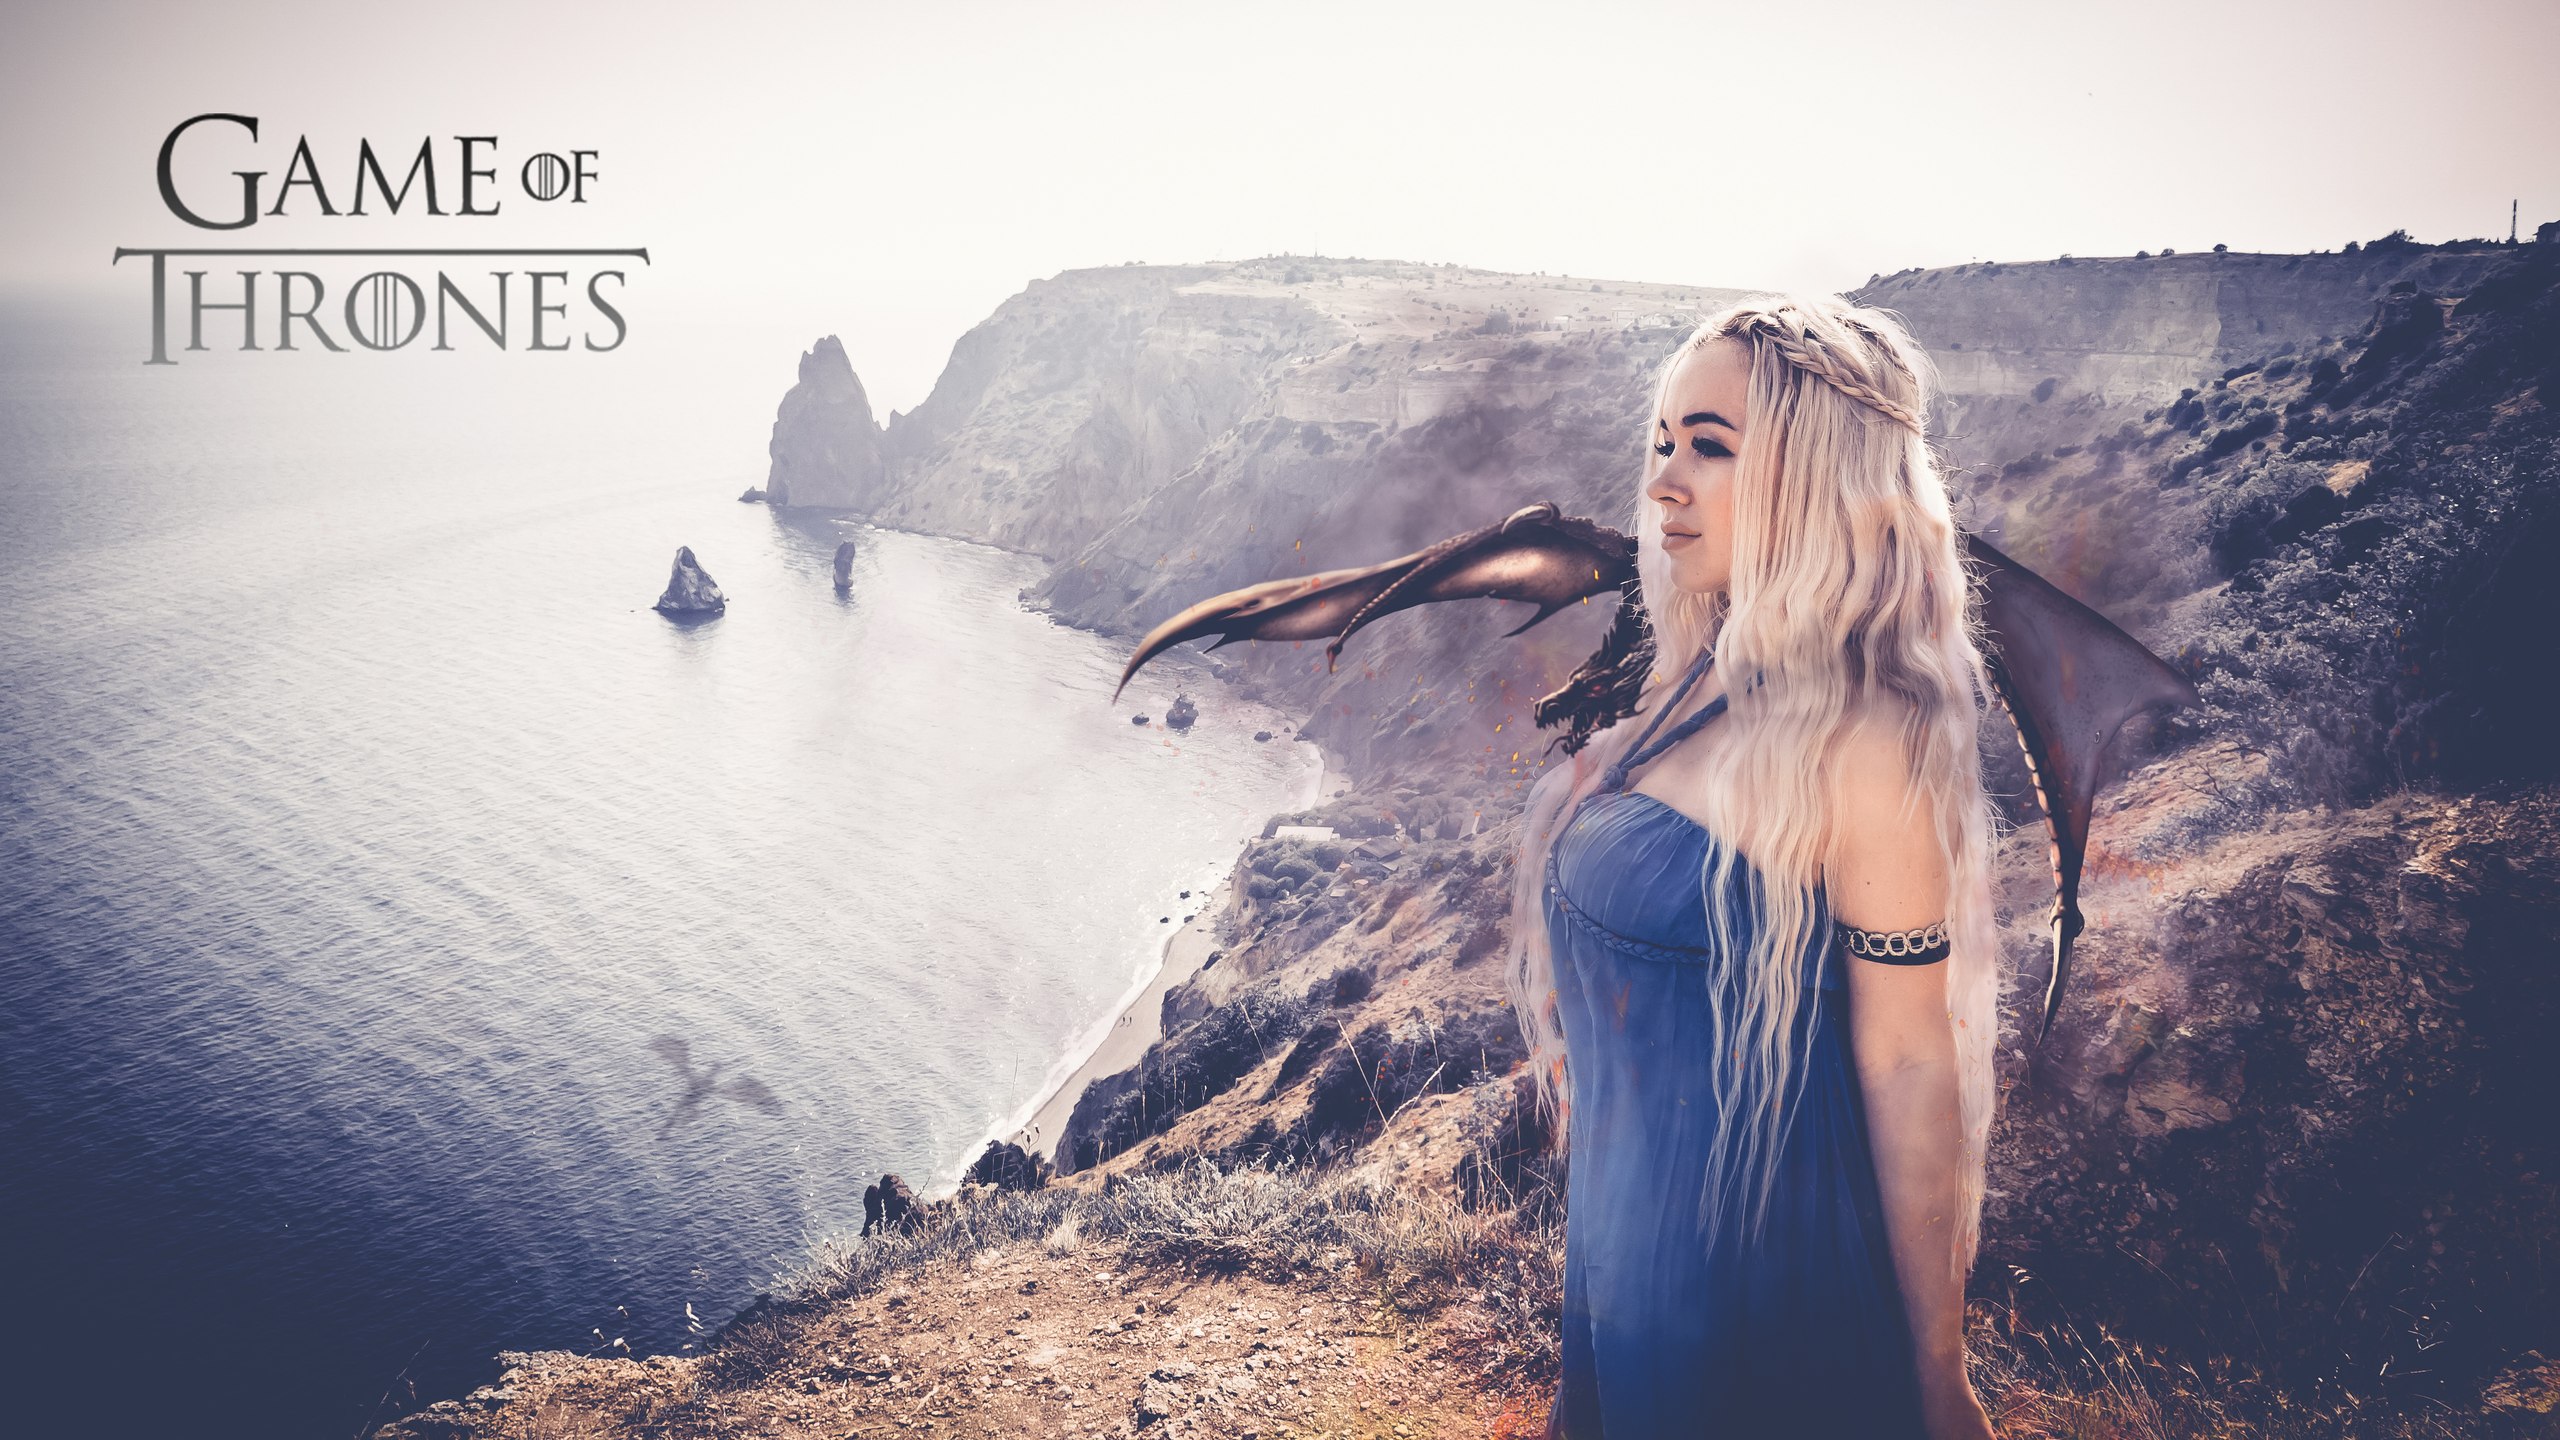 daenerys wallpaper hd,himmel,schönheit,blond,fotografie,schriftart